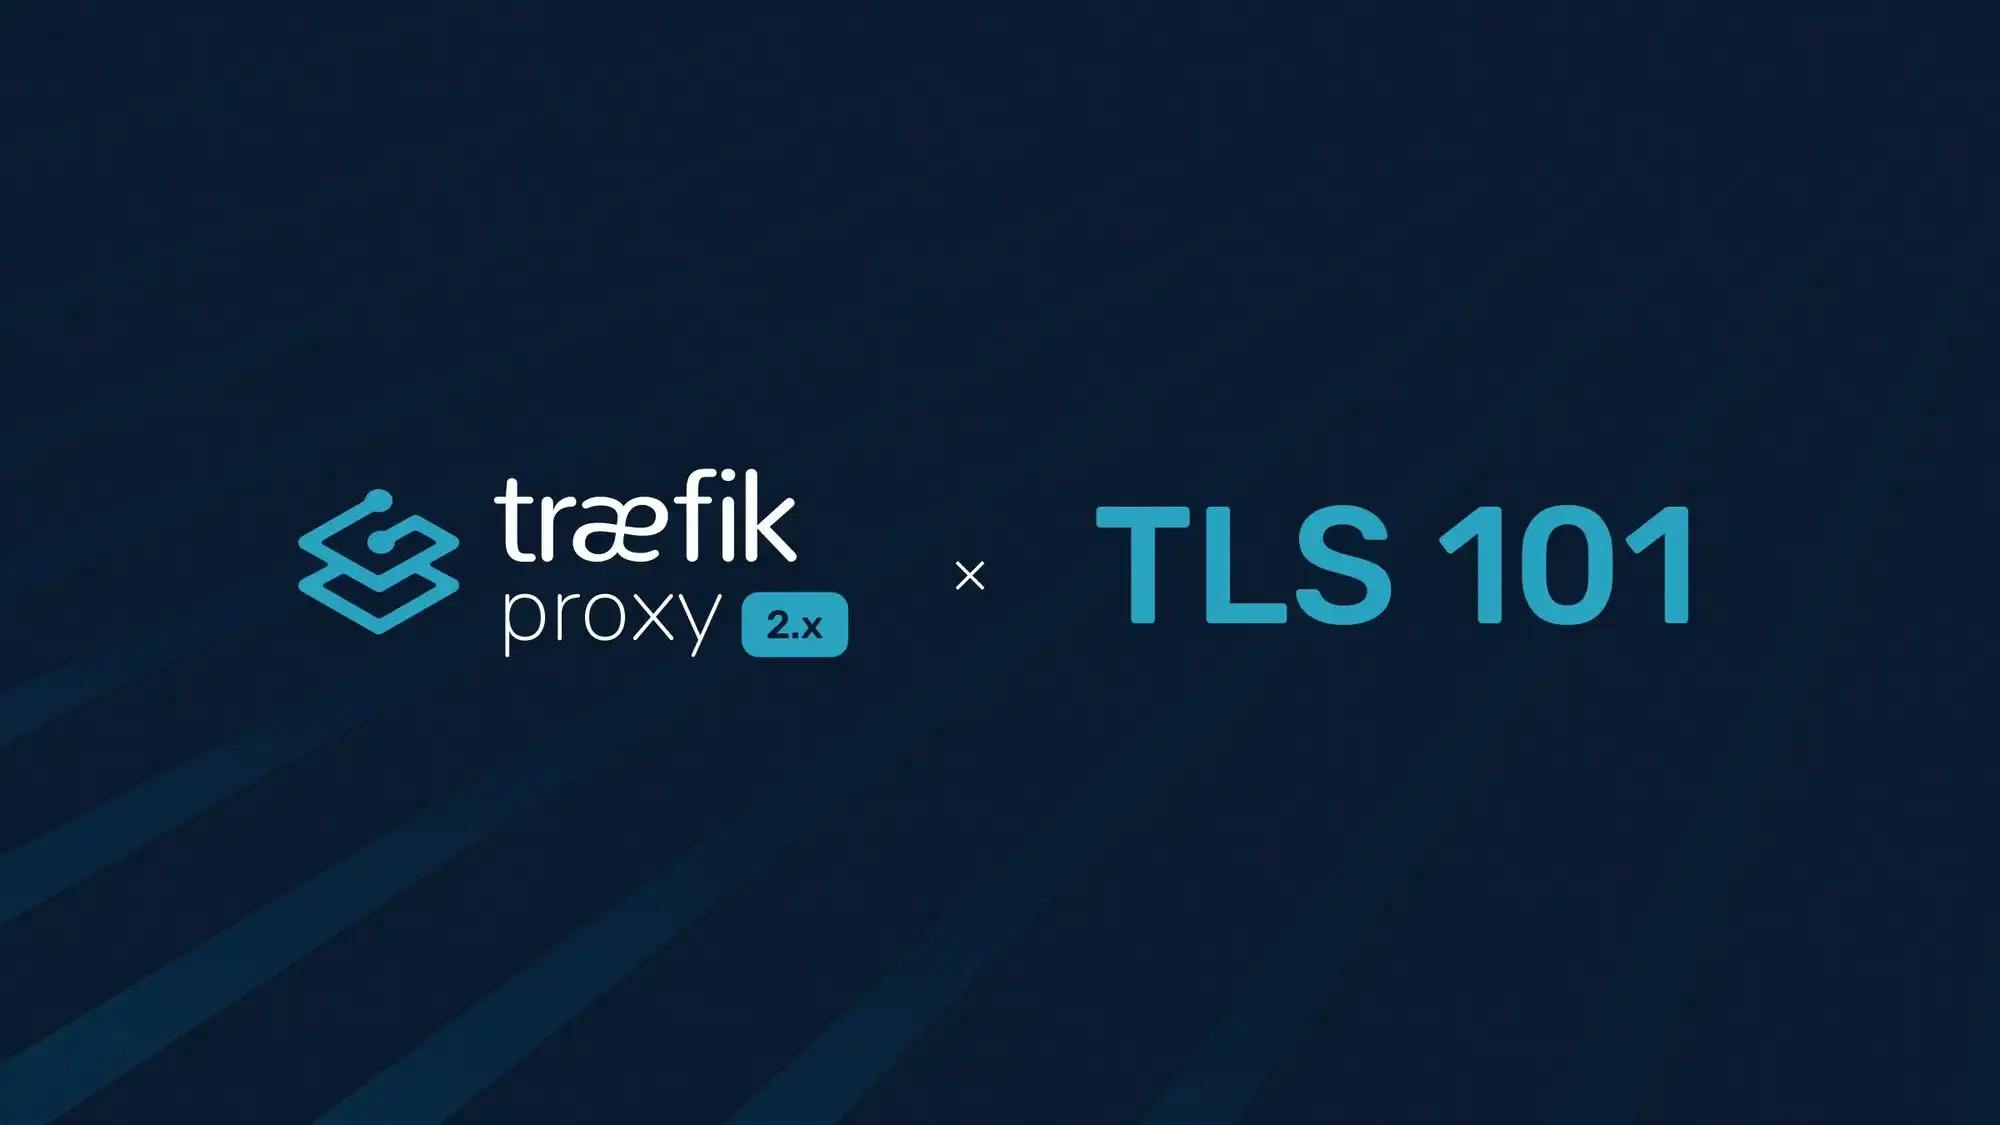 Traefik Proxy 2.x and TLS 101